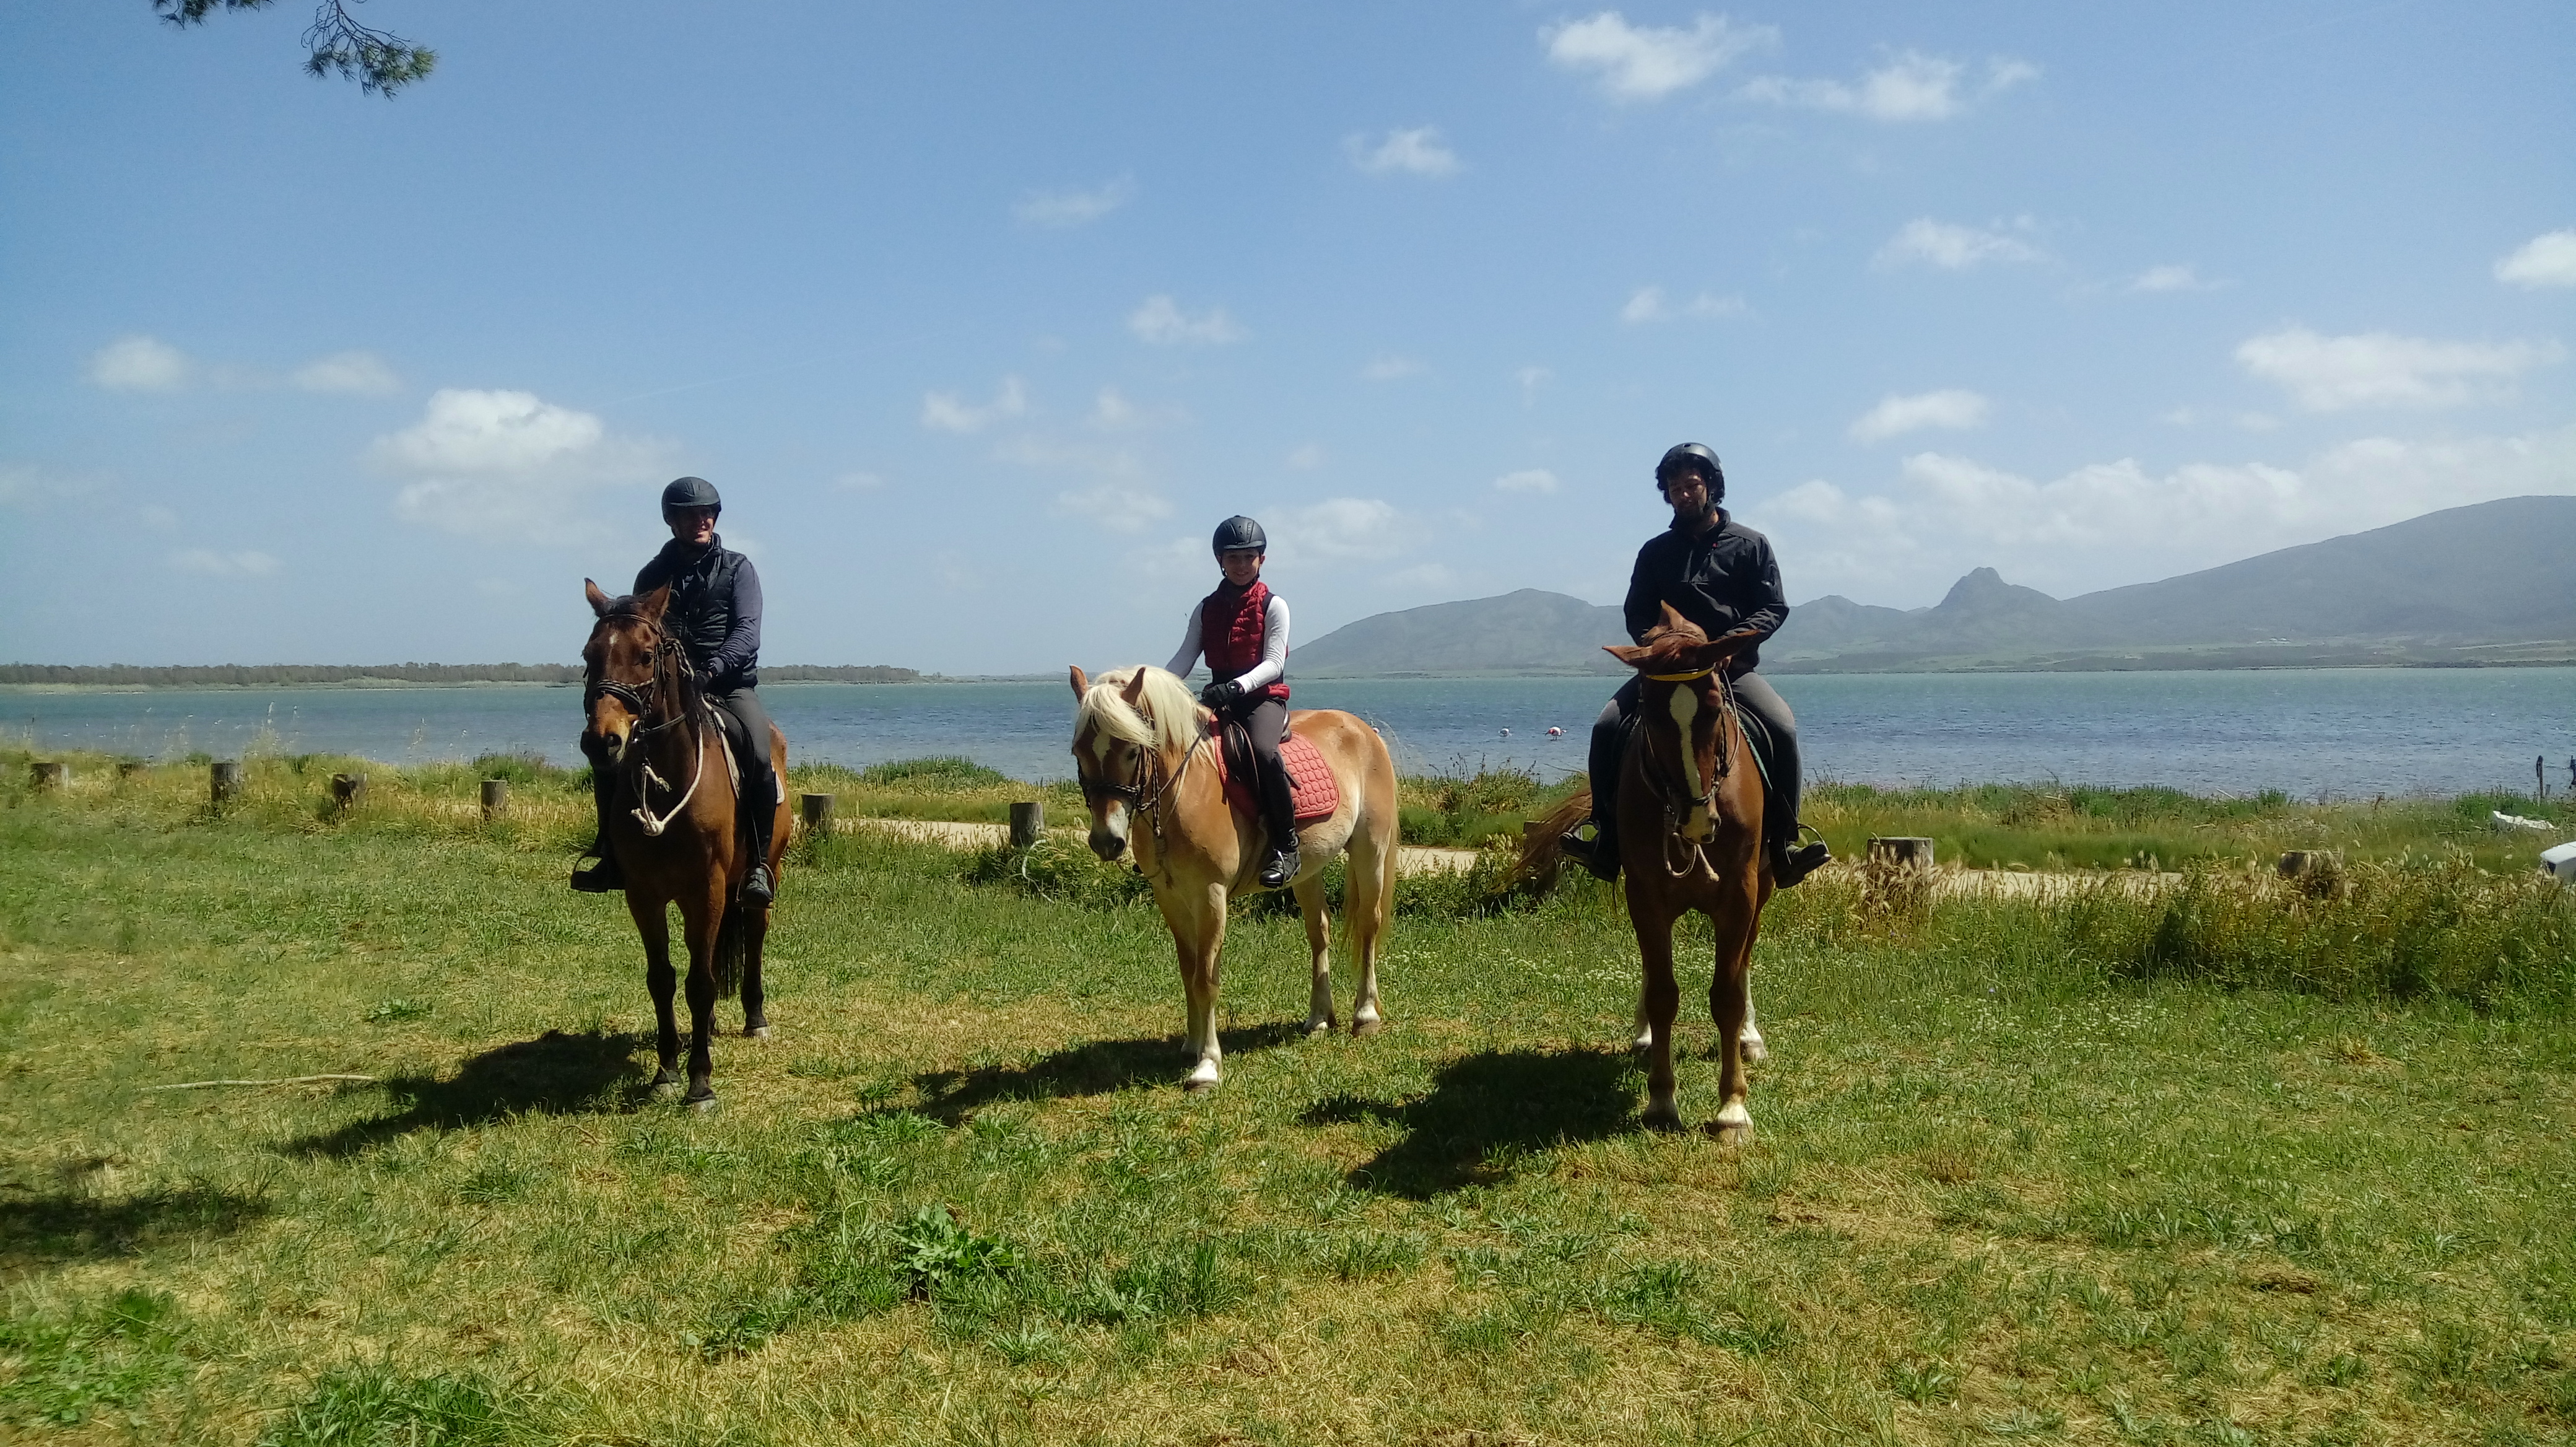 Campo estivo a cavallo per ragazzi in Sardegna 7 giorni